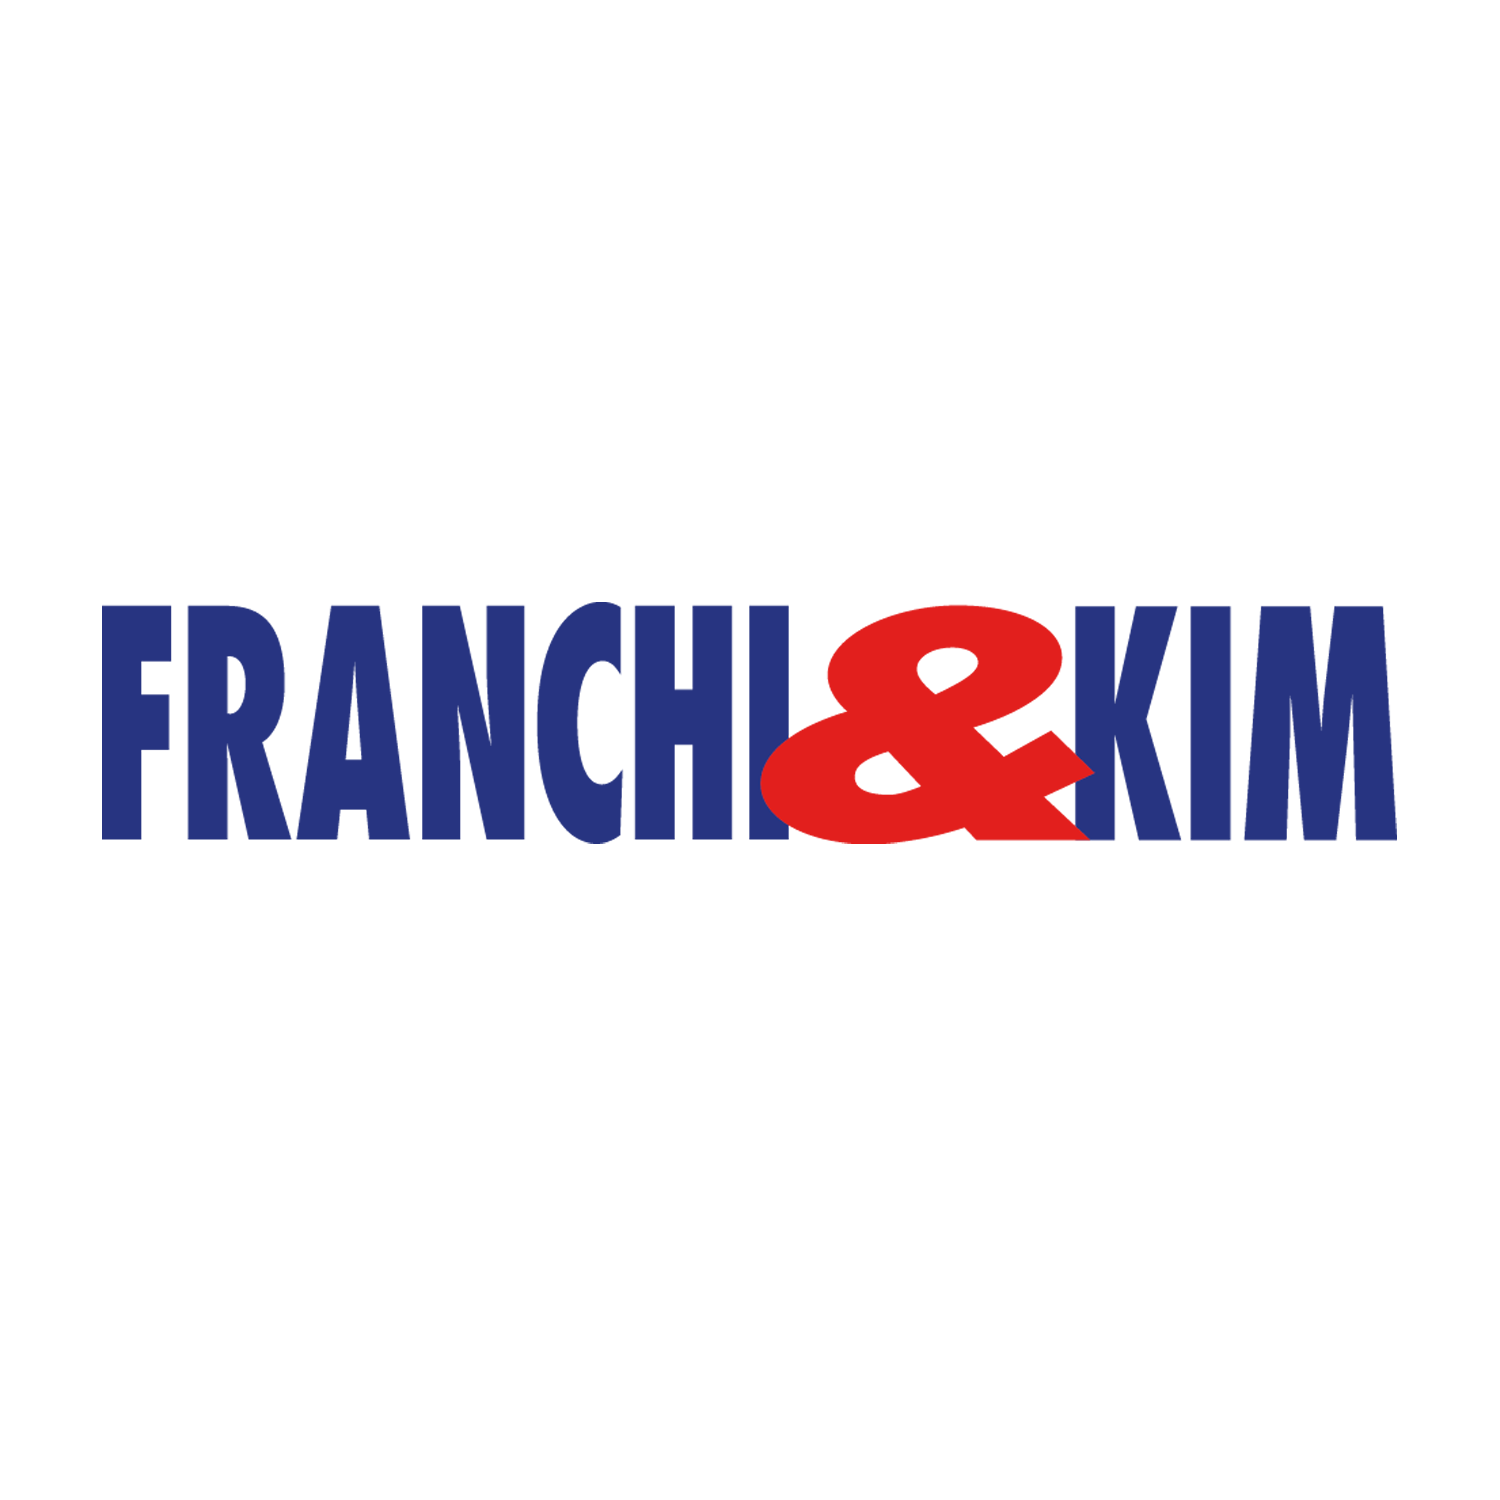 FRANCHI&KIM